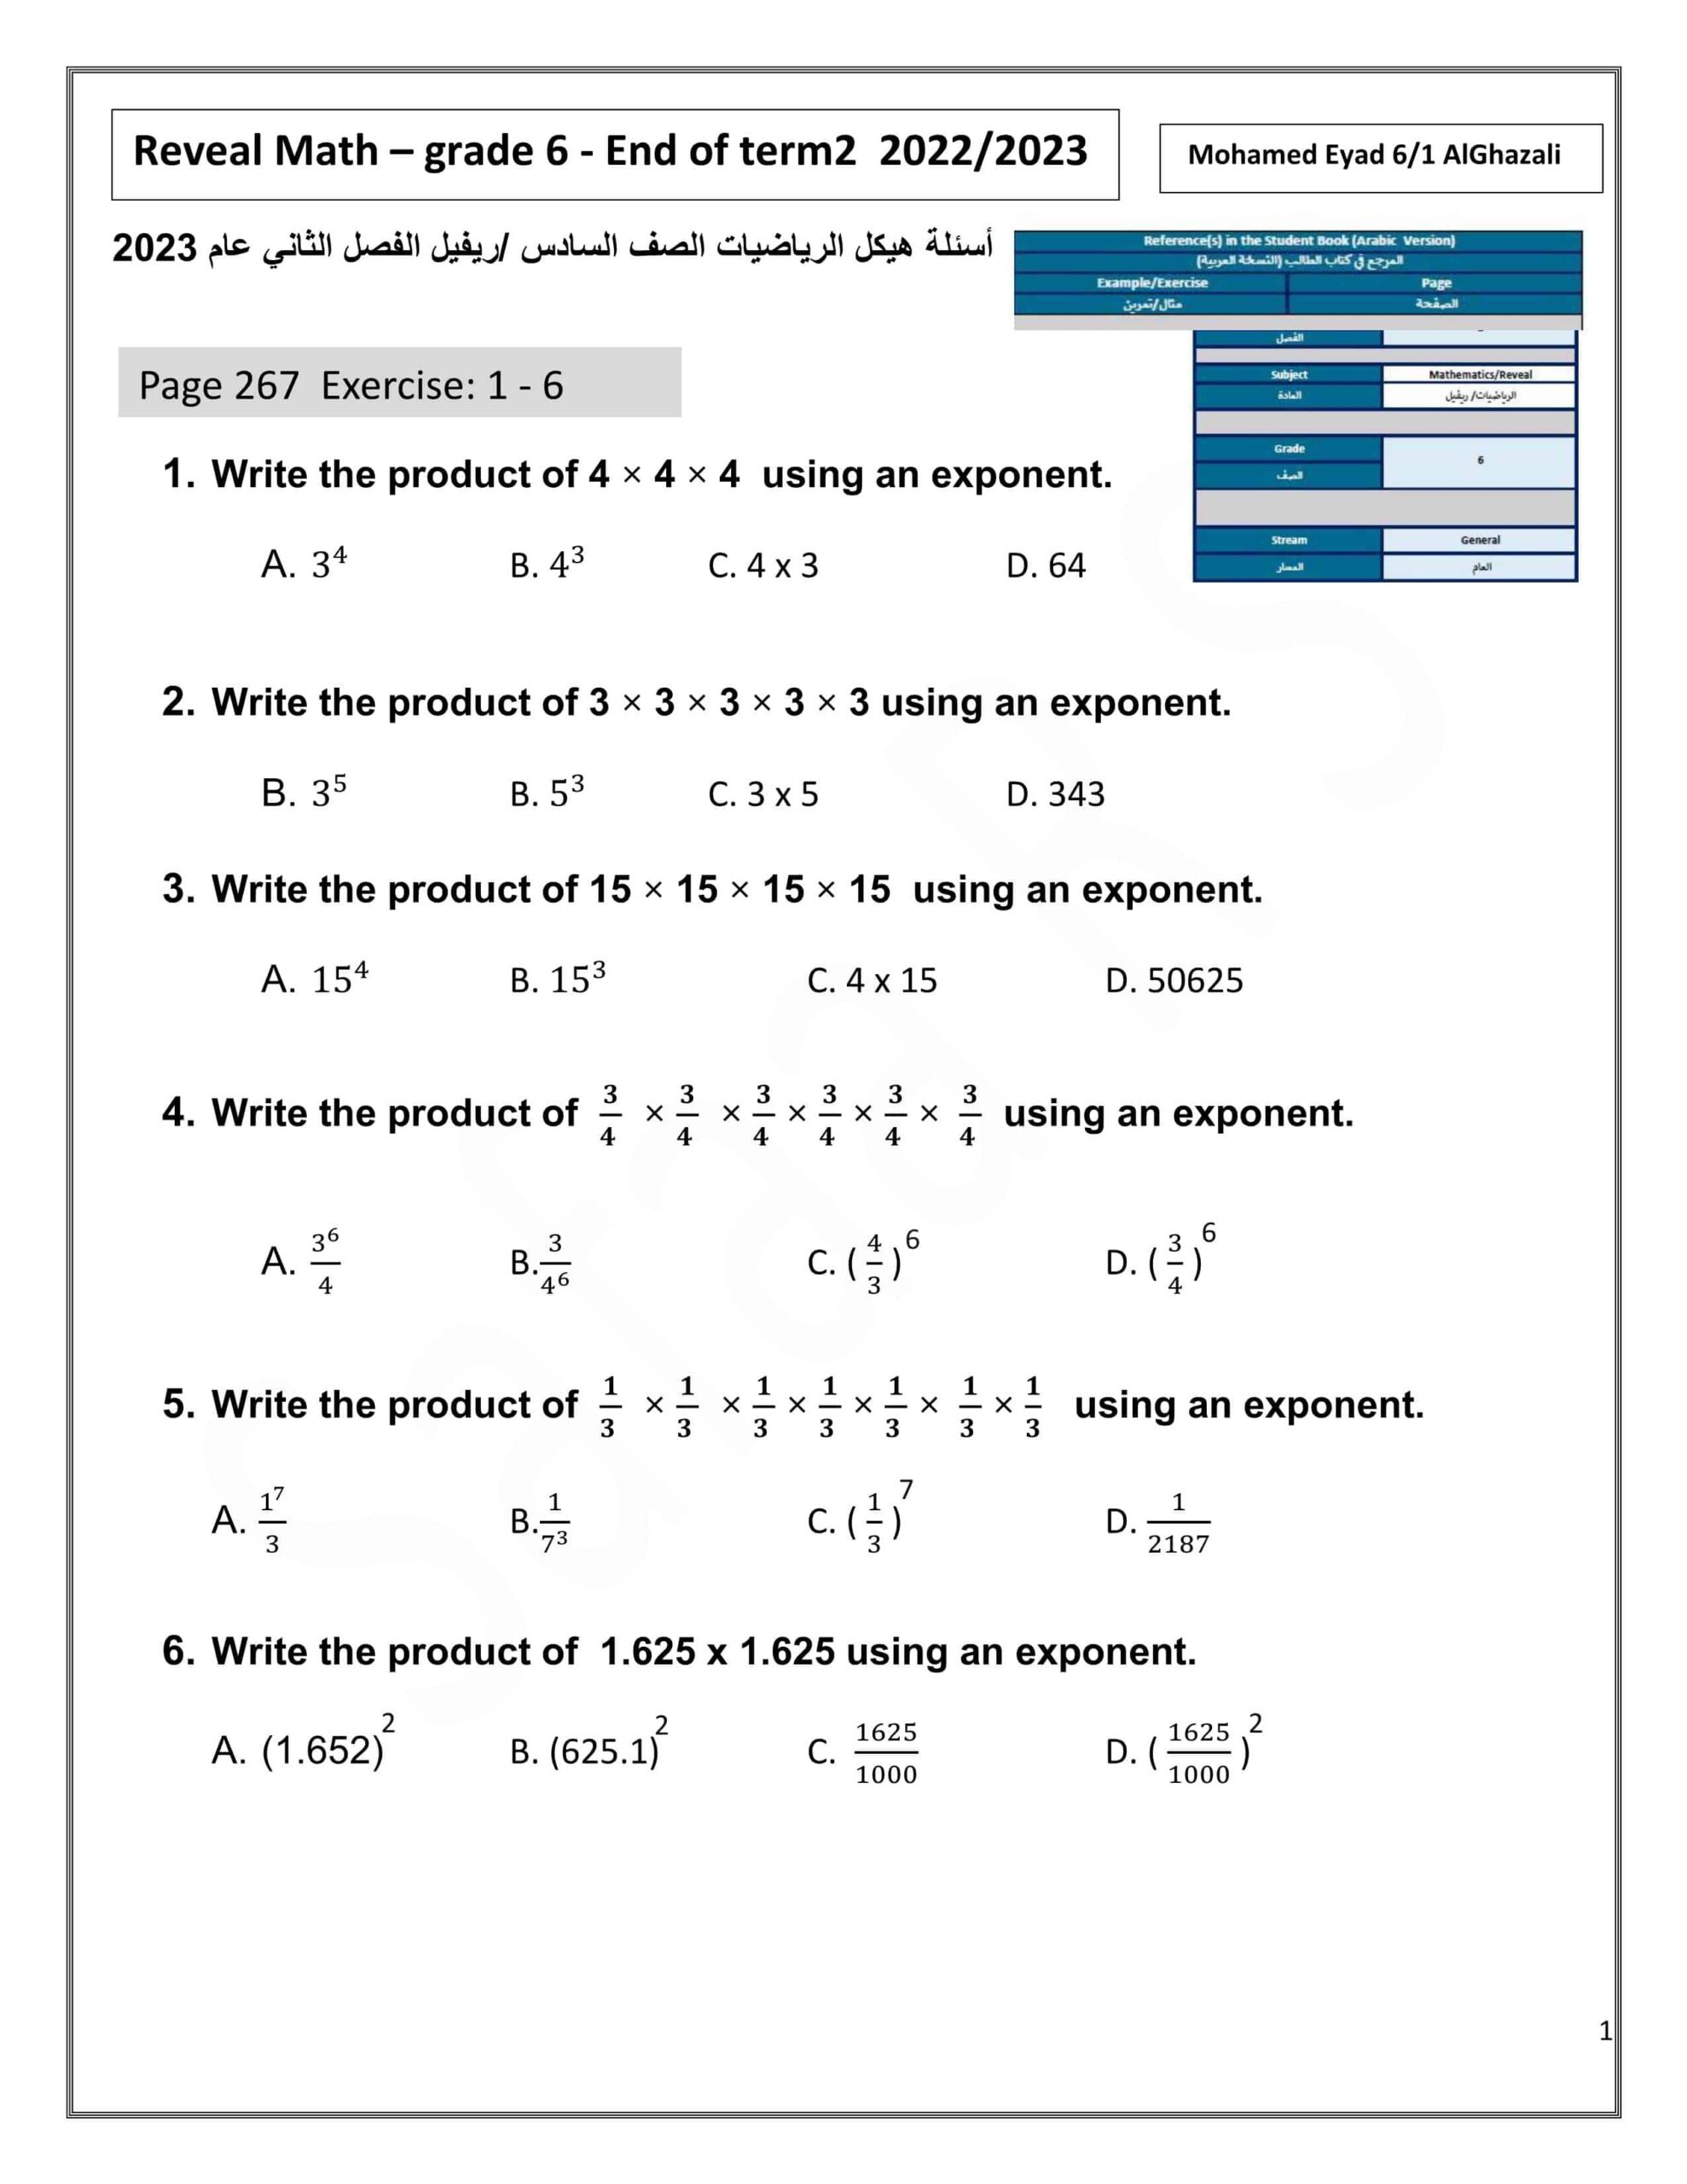 حل أوراق عمل أسئلة هيكلة الرياضيات المتكاملة الصف السادس Reveal